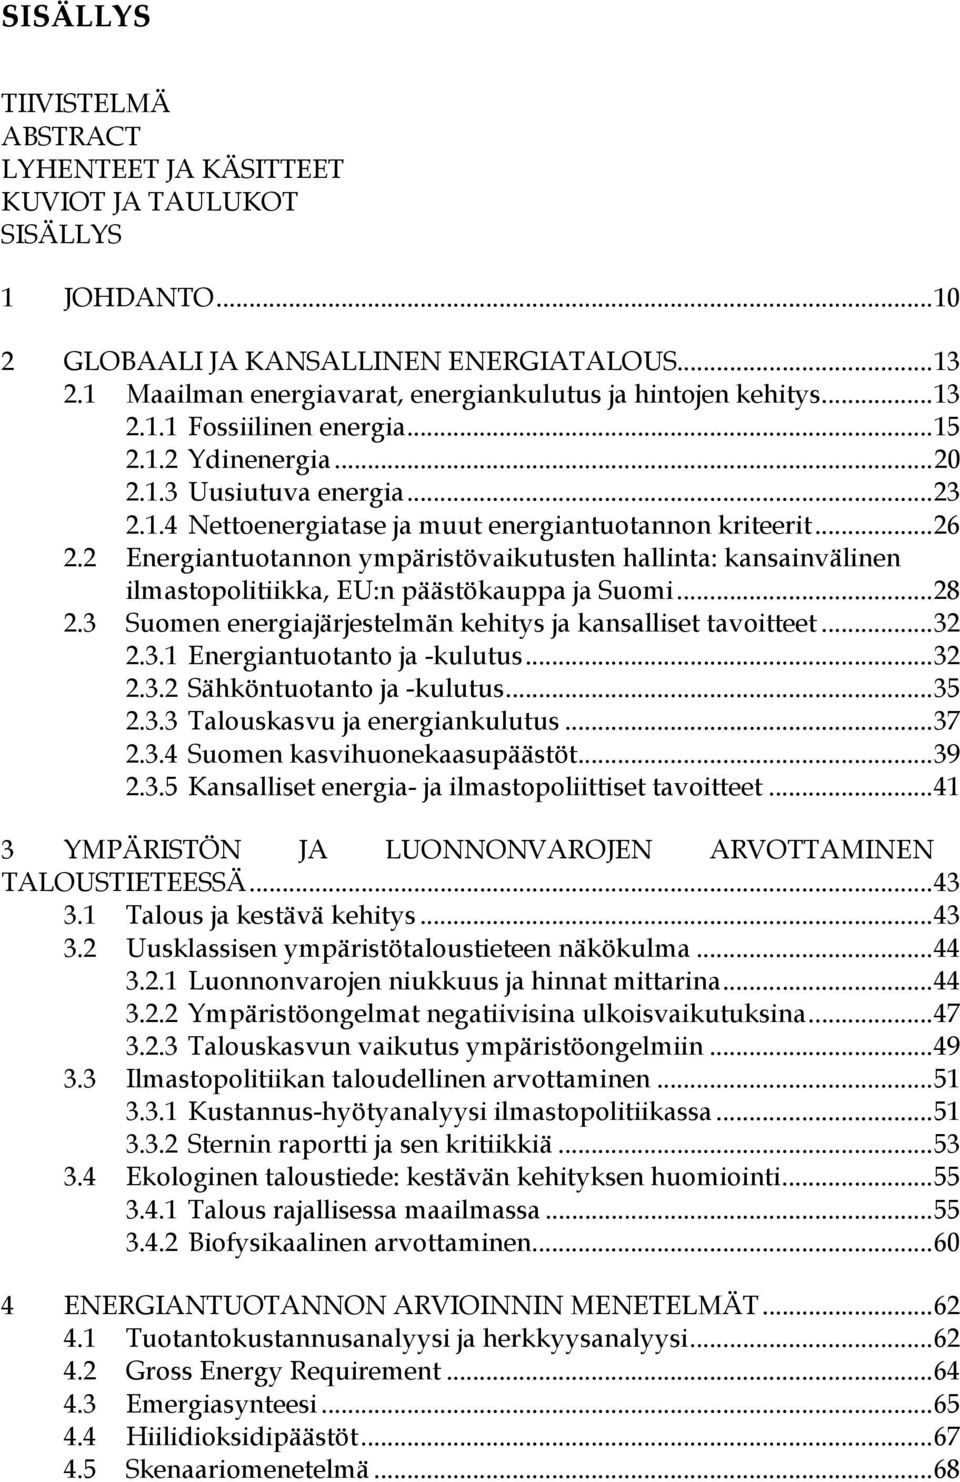 ..26 2.2 Energiantuotannon ympäristövaikutusten hallinta: kansainvälinen ilmastopolitiikka, EU:n päästökauppa ja Suomi...28 2.3 Suomen energiajärjestelmän kehitys ja kansalliset tavoitteet...32 2.3.1 Energiantuotanto ja -kulutus.